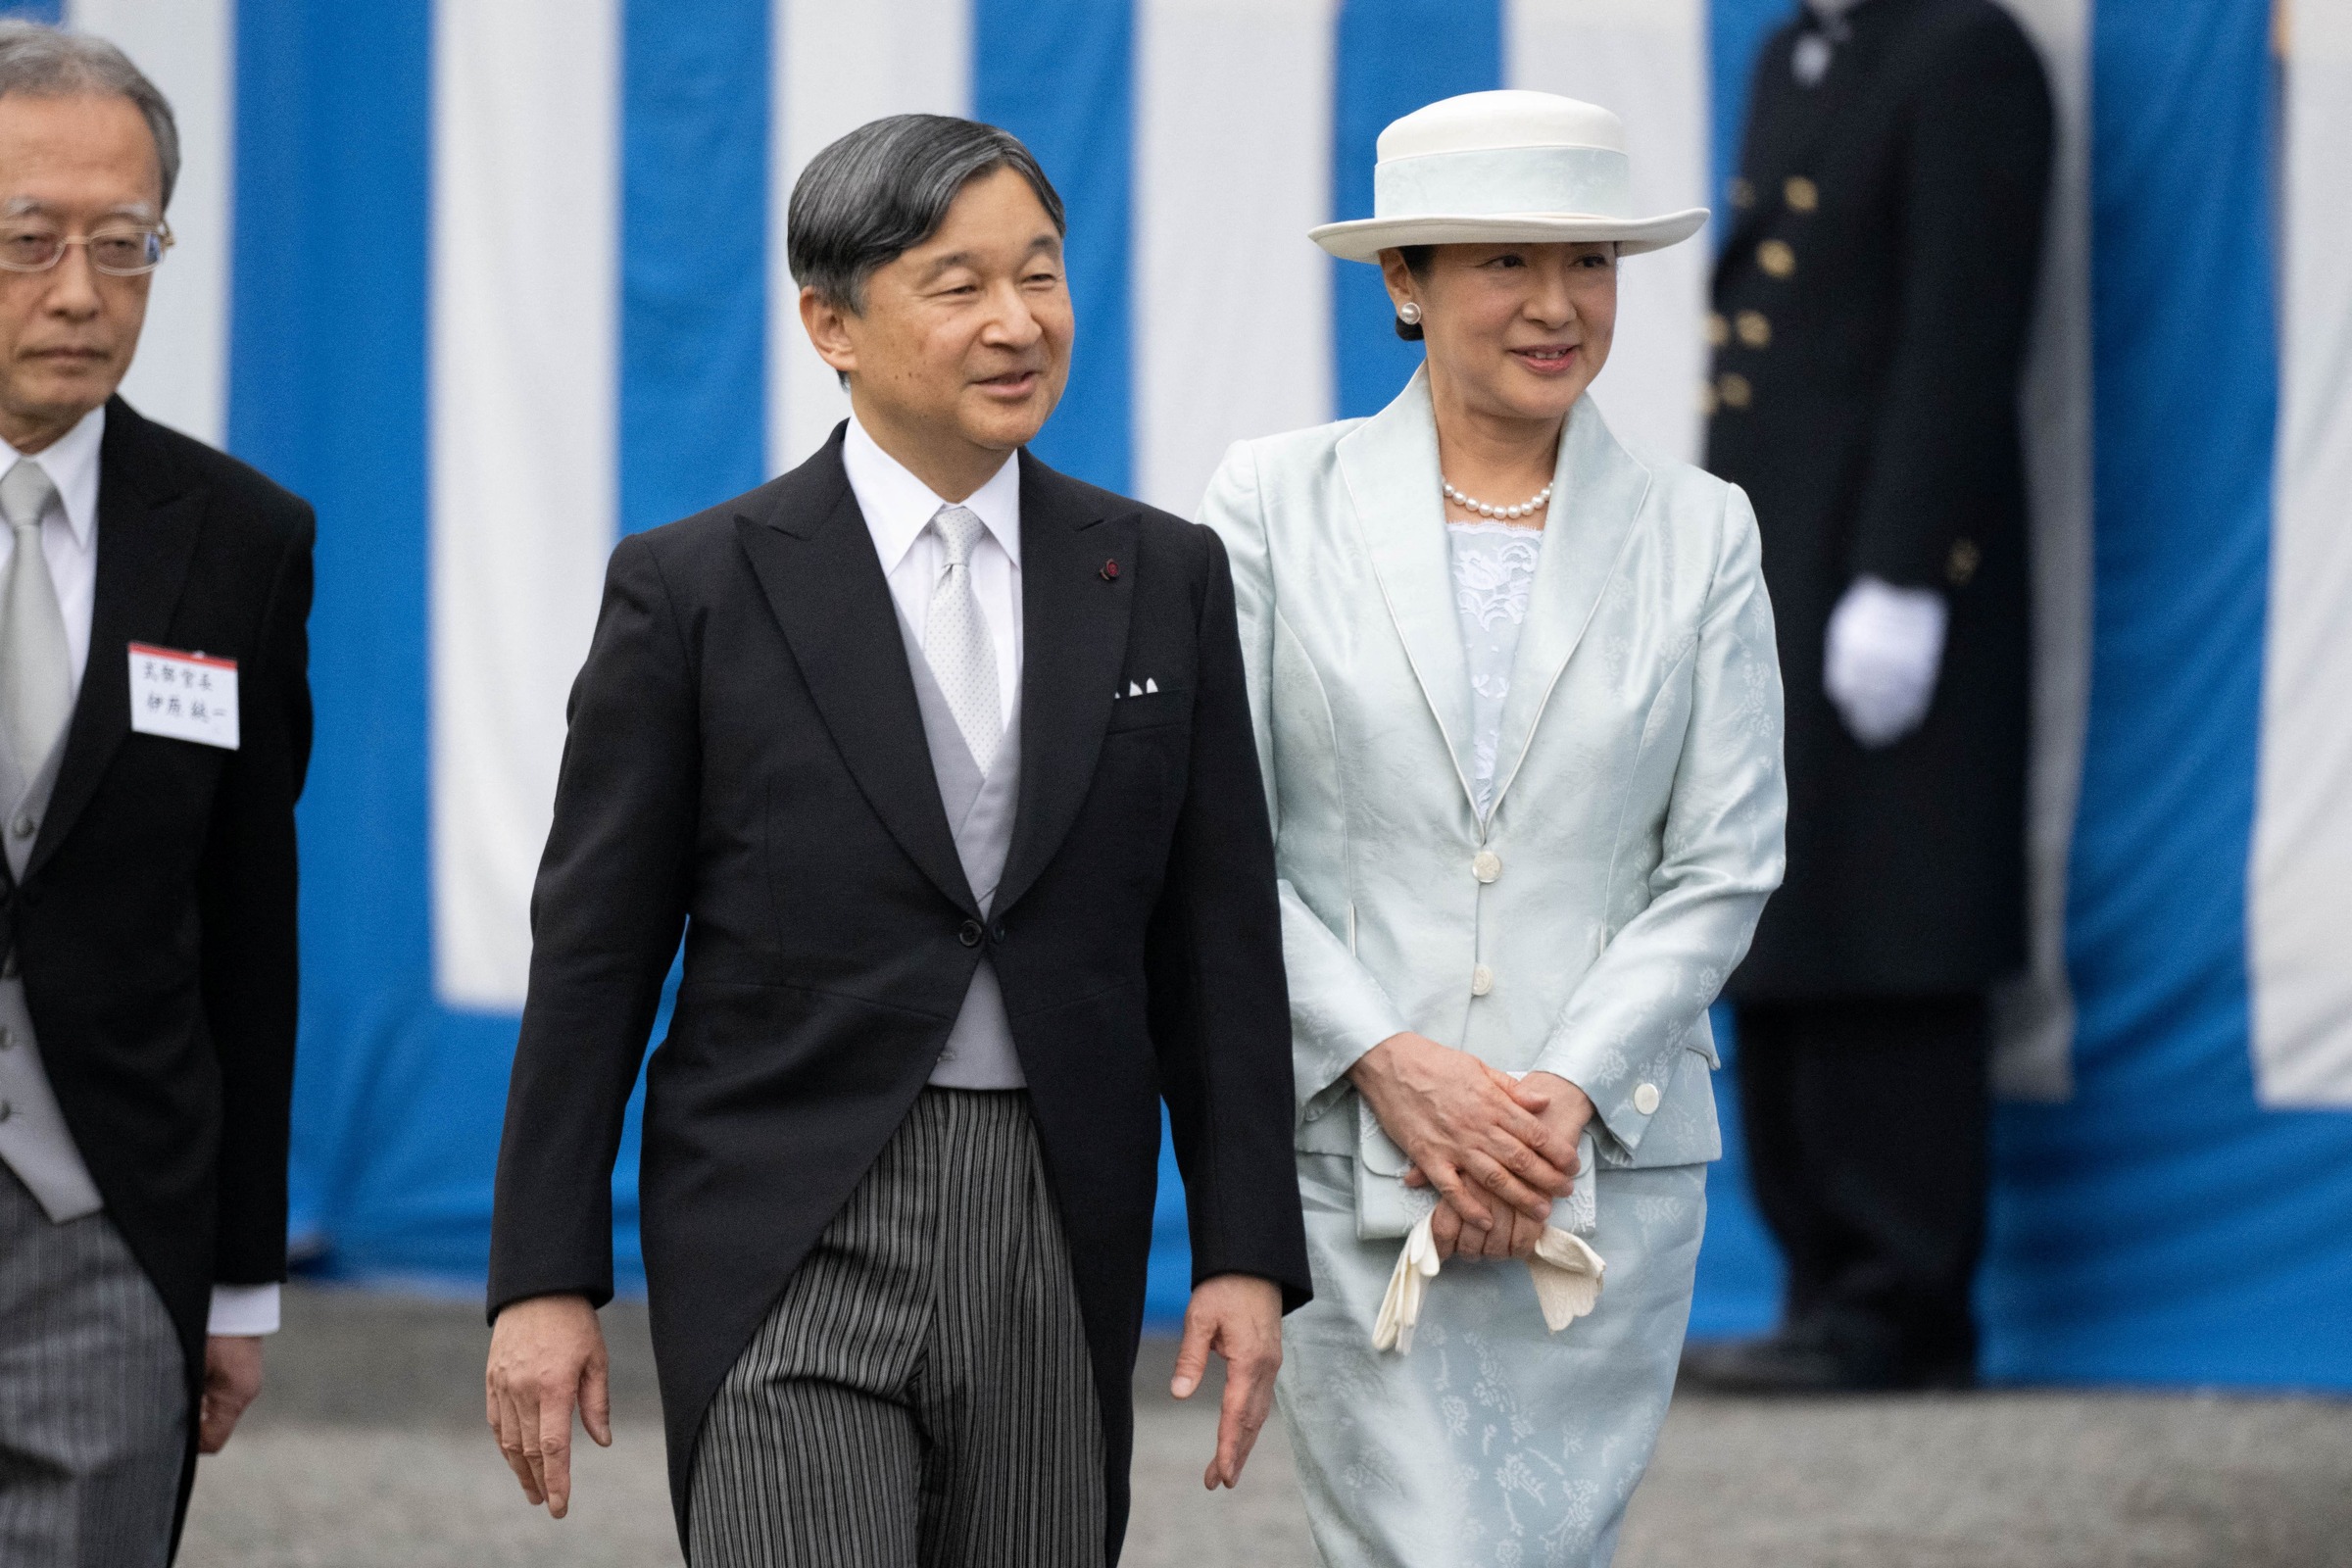 日本九成承认女性天皇 半数指继承皇位无关性别   